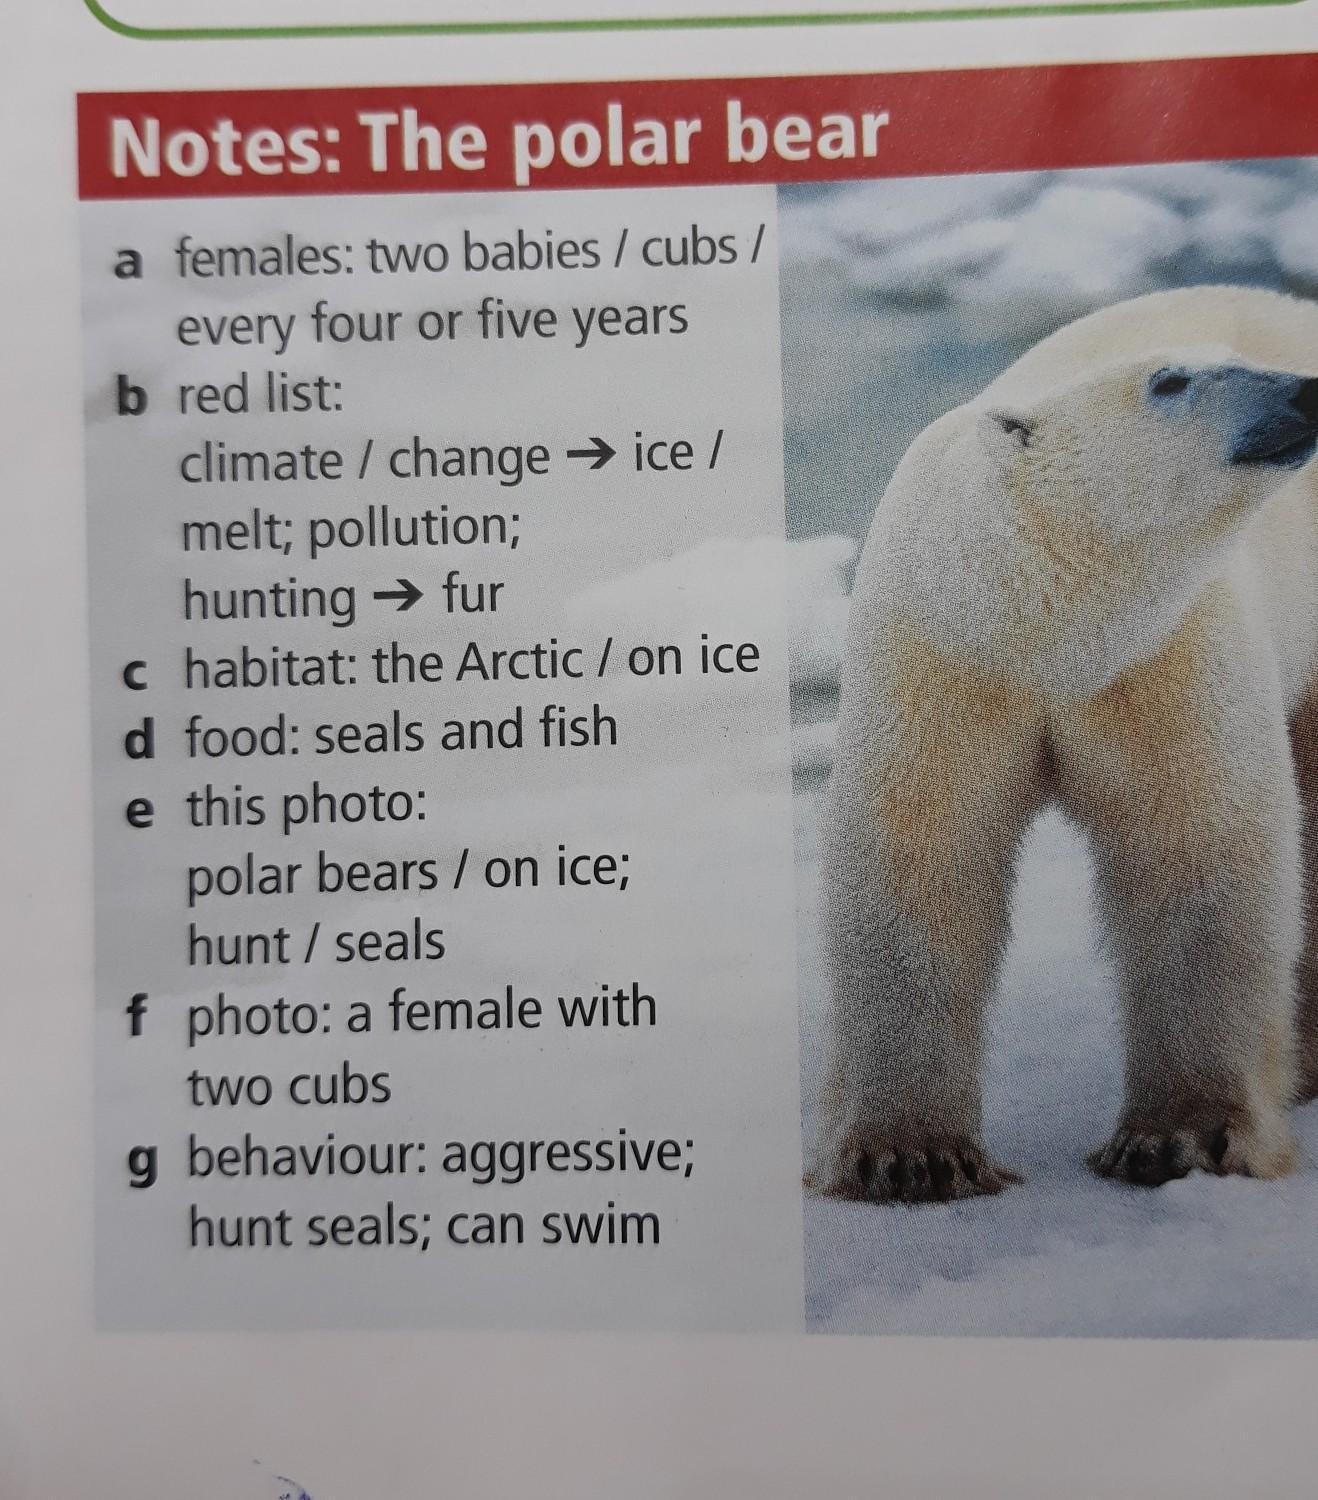 Under bear перевод. Рассказ по английскому про белого медведя. Рассказ о медведе на английском языке. Текст про медведя на английском. Текст на английском языке про белого медведя.